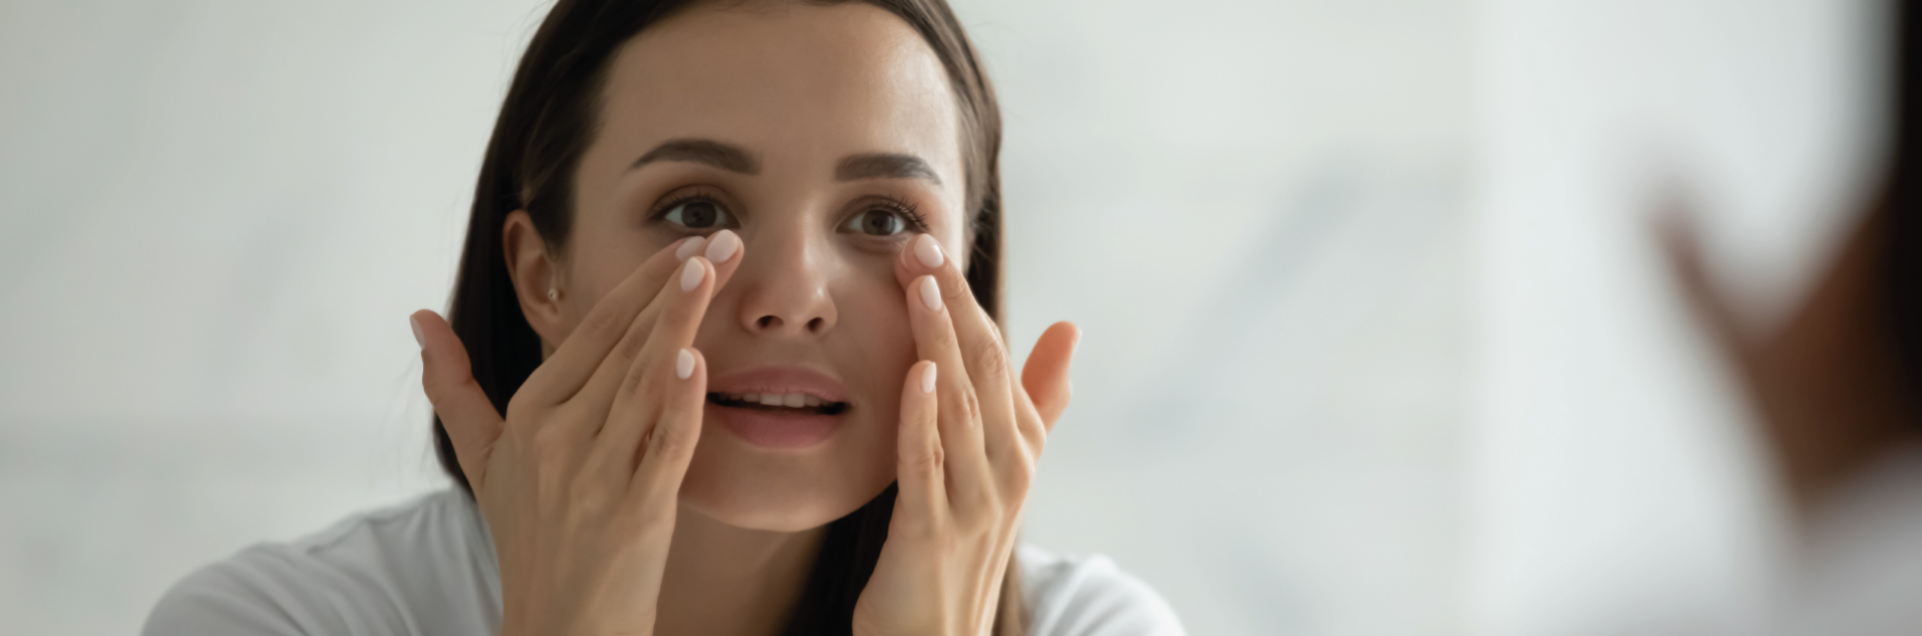 Derrame en el ojo: causas, síntomas y tratamiento